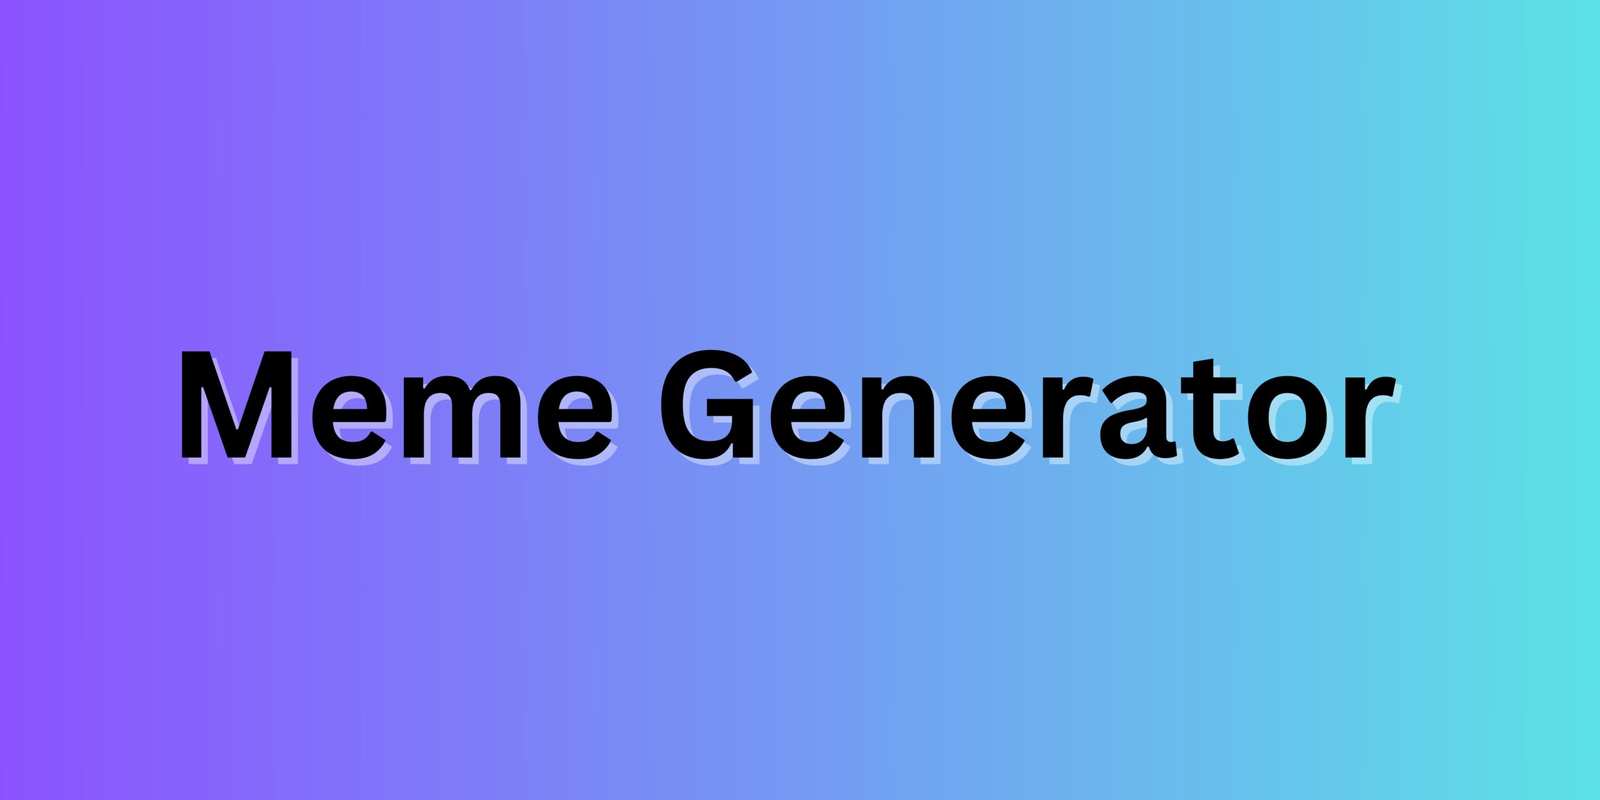 Meme Generator - Make Memes Online for Free